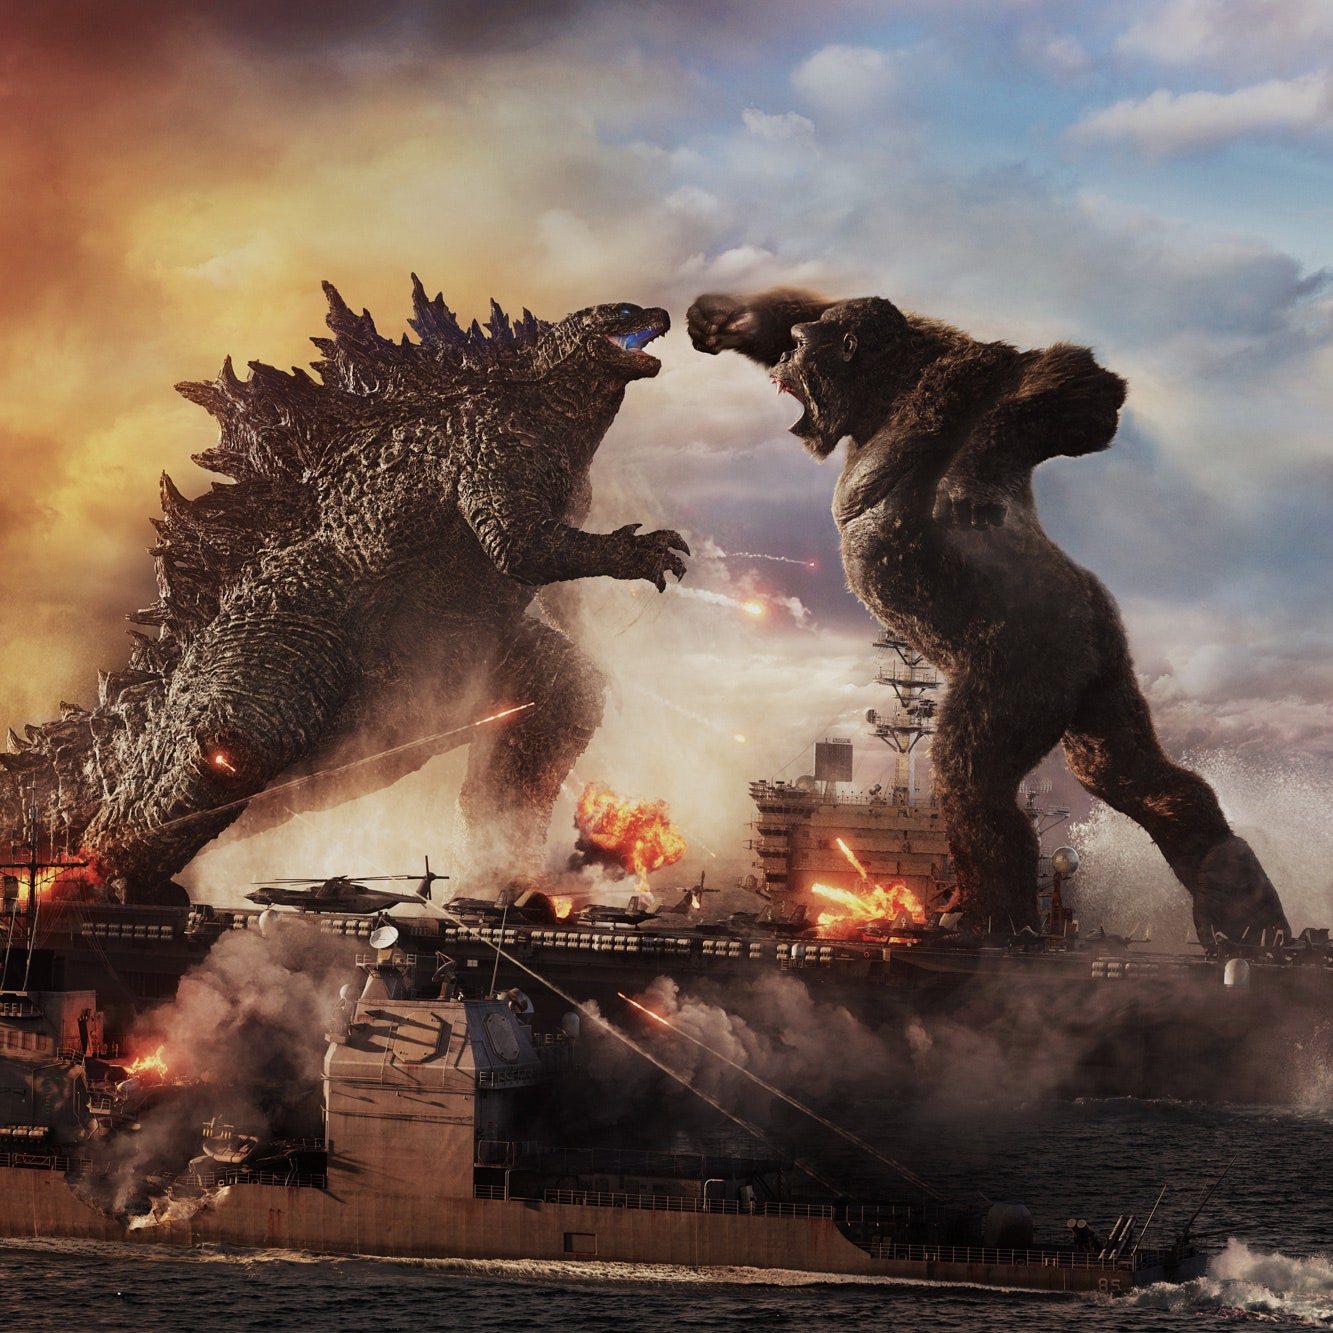 Godzilla Digital Art 2021
 Wallpapers